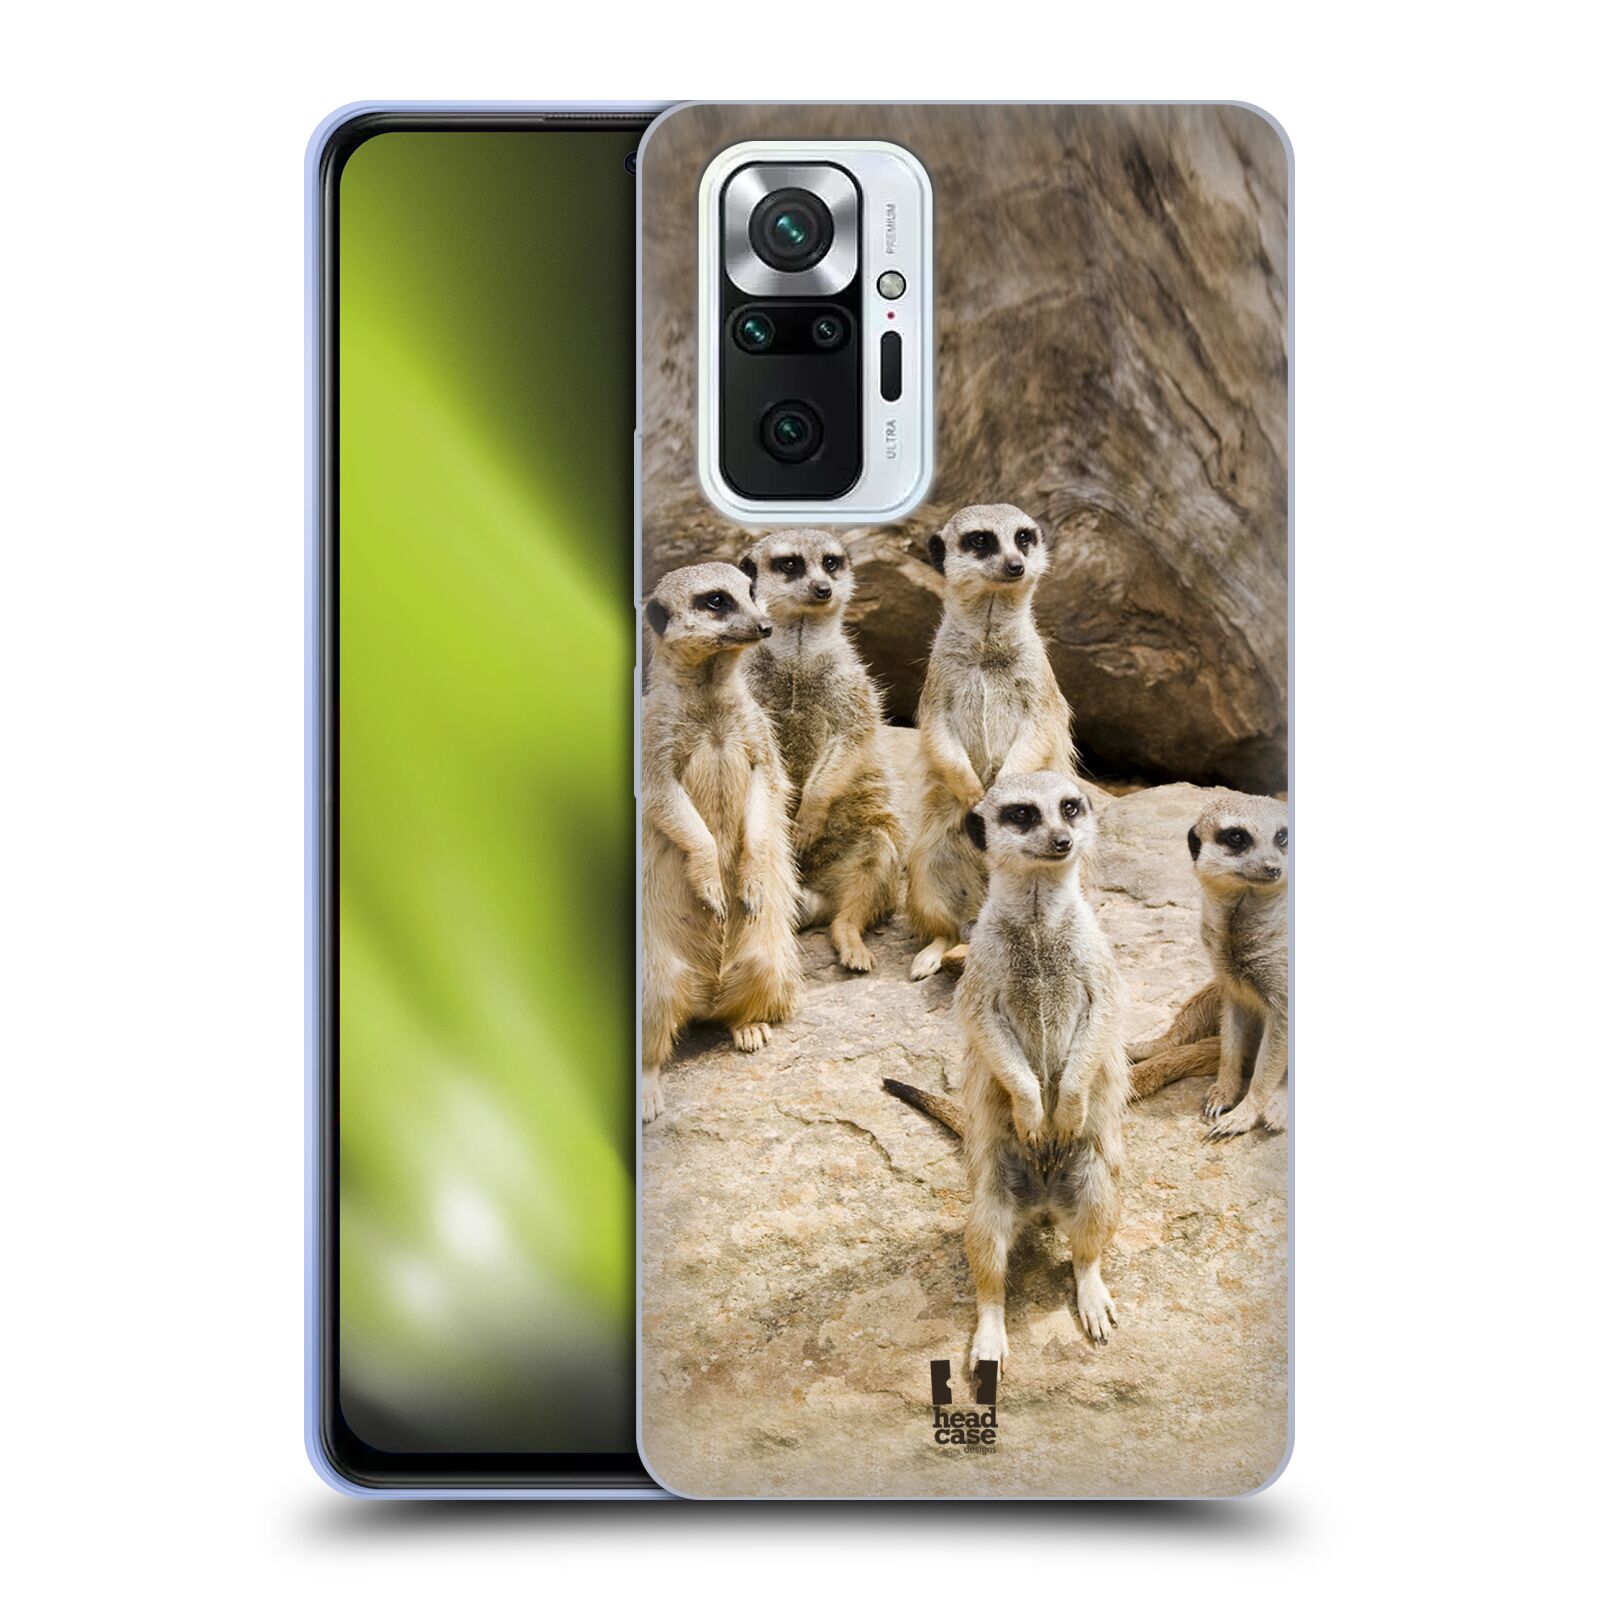 Zadní obal pro mobil Xiaomi Redmi Note 10 PRO - HEAD CASE - Svět zvířat roztomilé surikaty